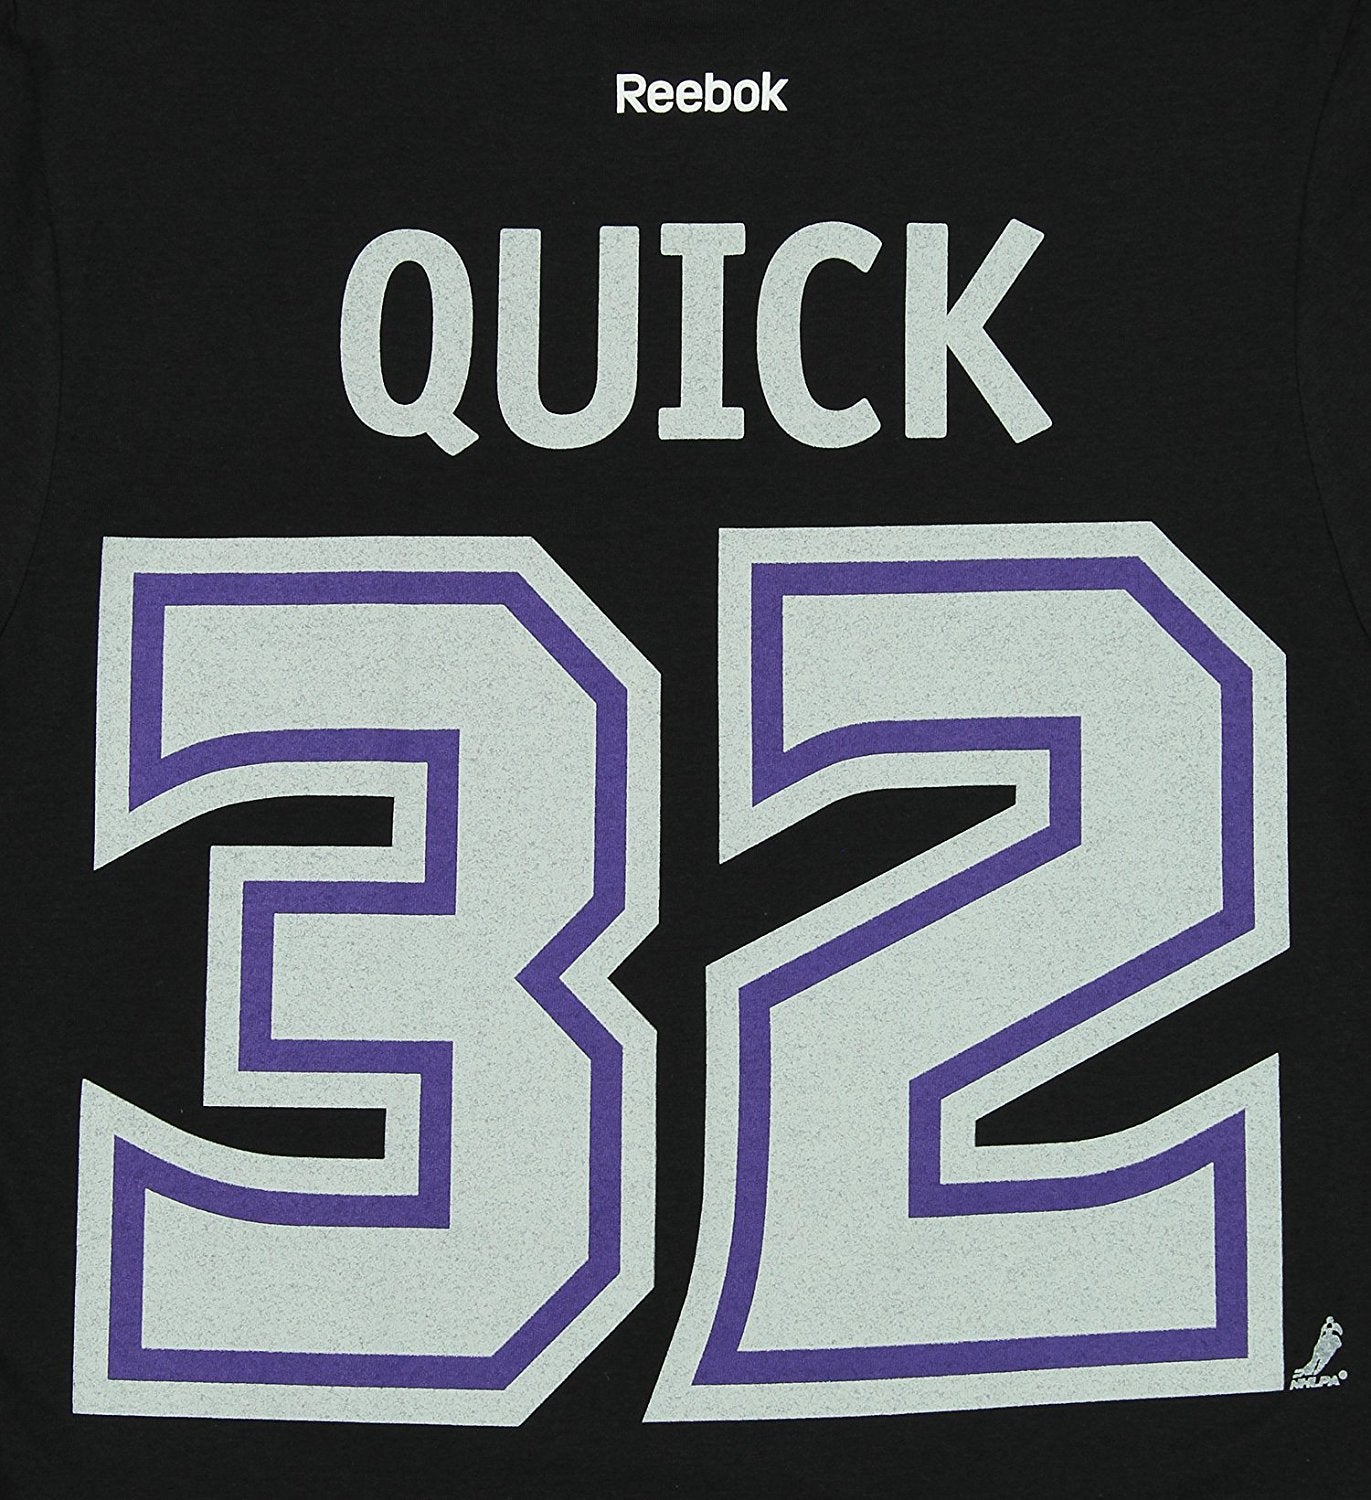 Reebok Mens La Kings Hockey Graphic T-Shirt, Black